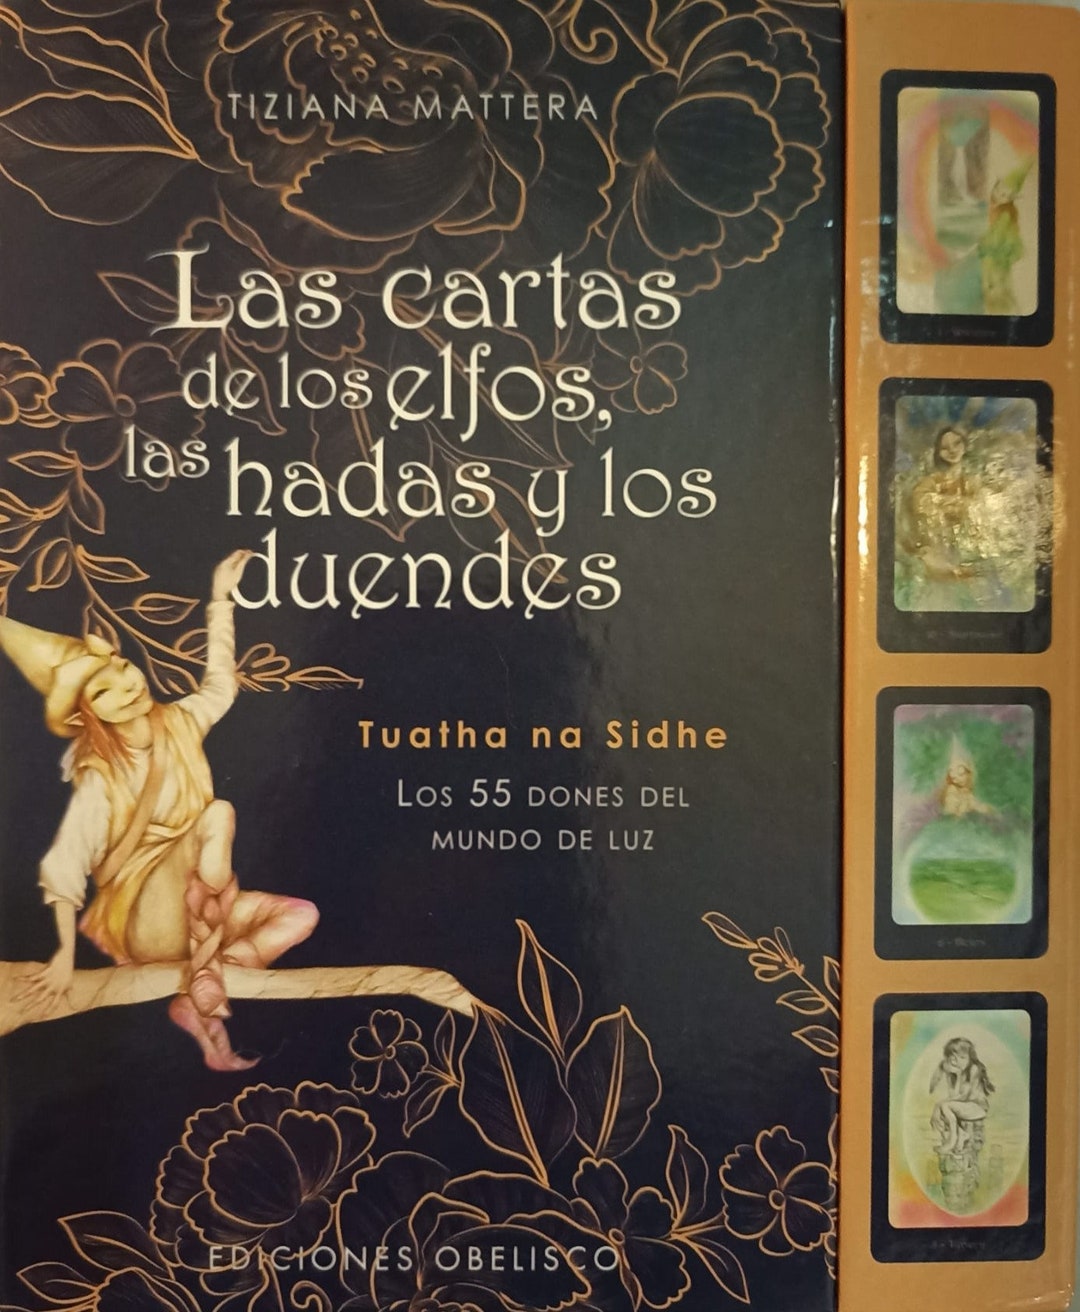 Hadas, Duendes, Elfos y otros seres - Lugares magicos. En Mexico